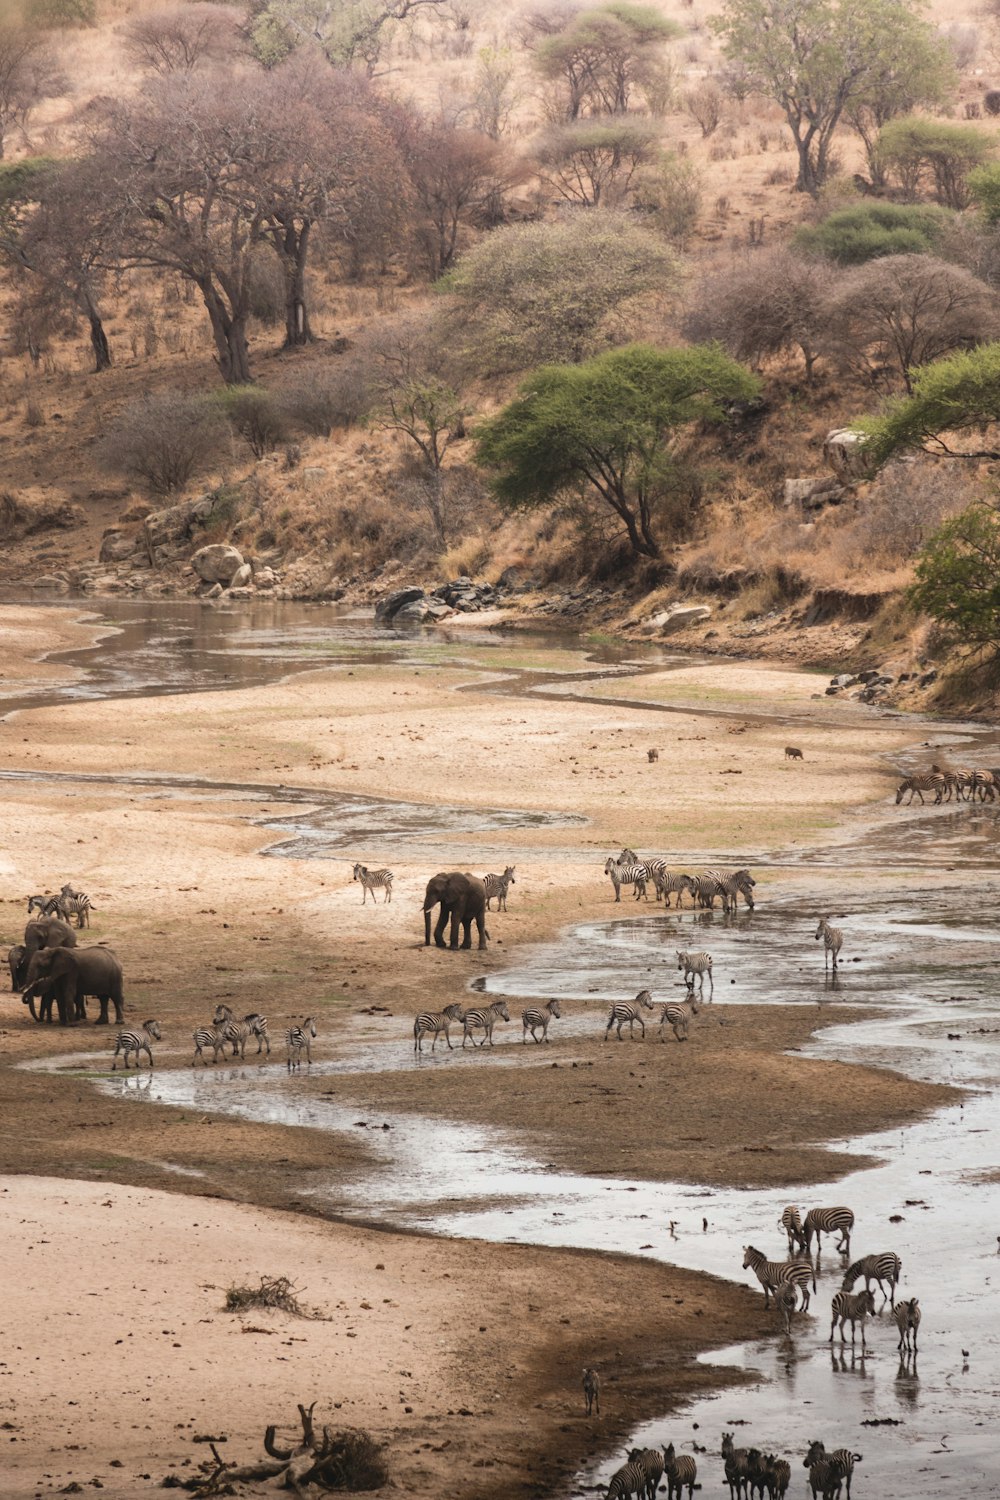 Una manada de animales salvajes caminando a través de un río